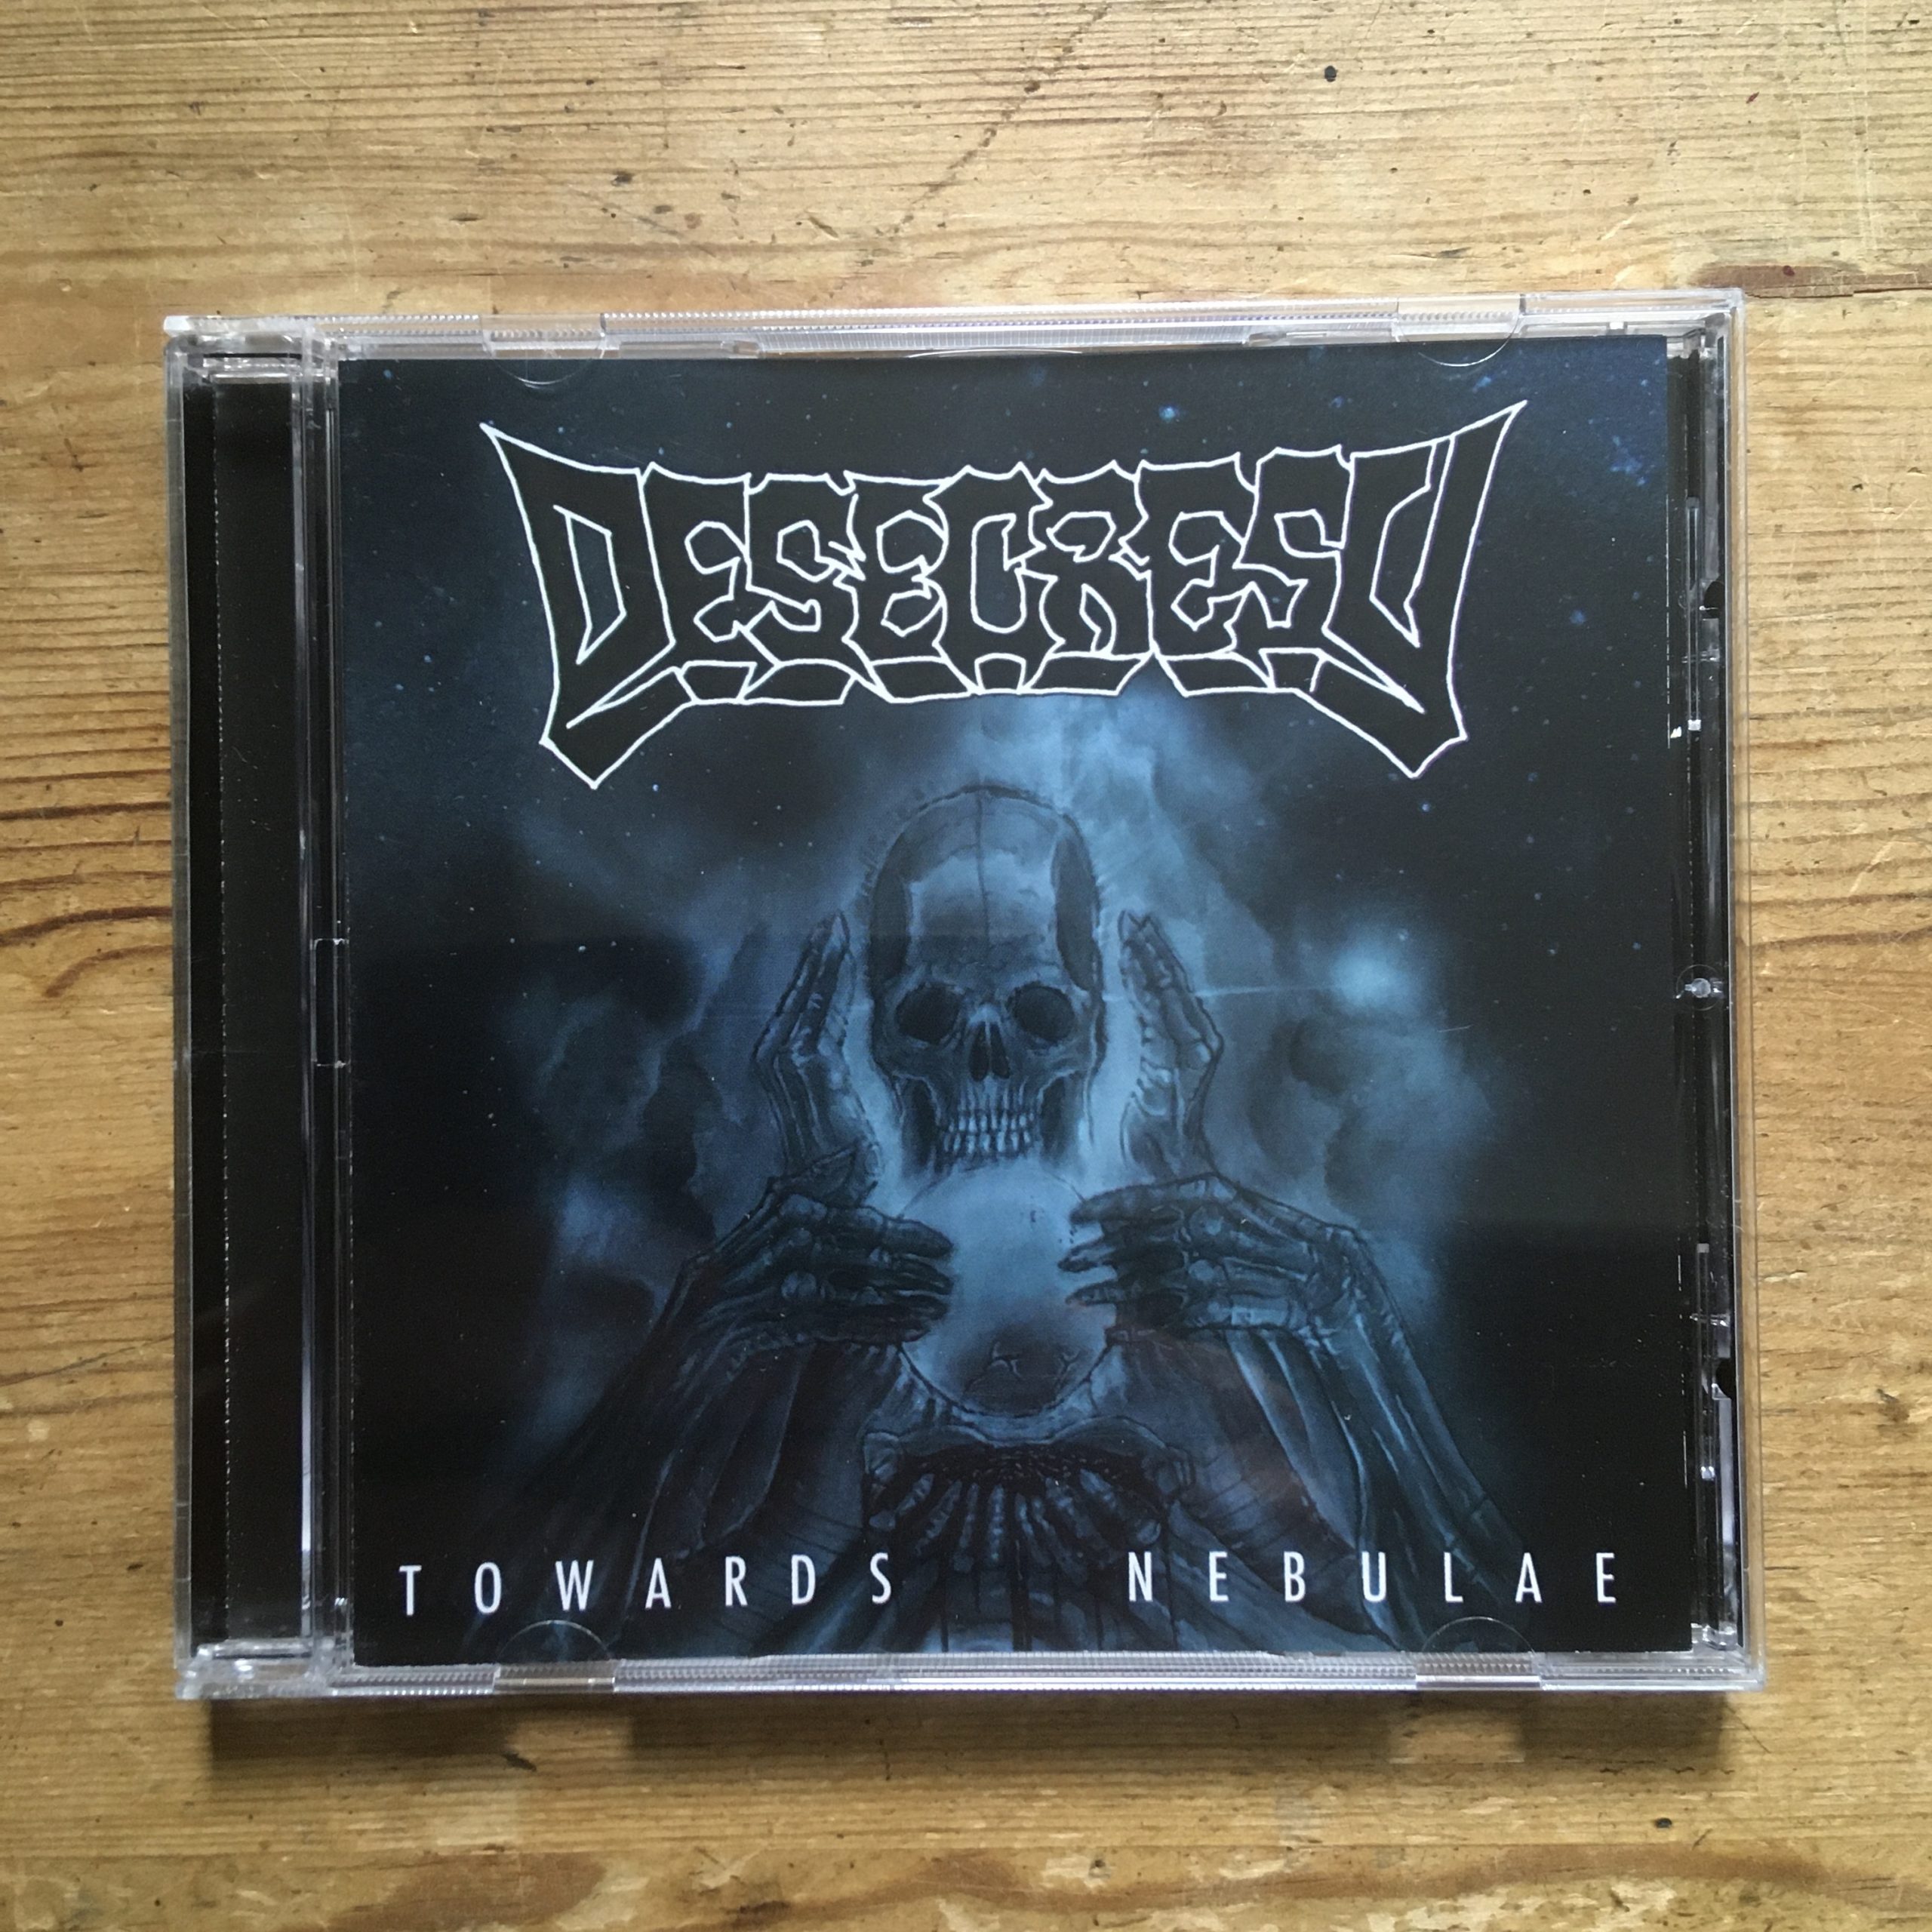 Photo of the Desecresy - "Towards Nebulae" CD